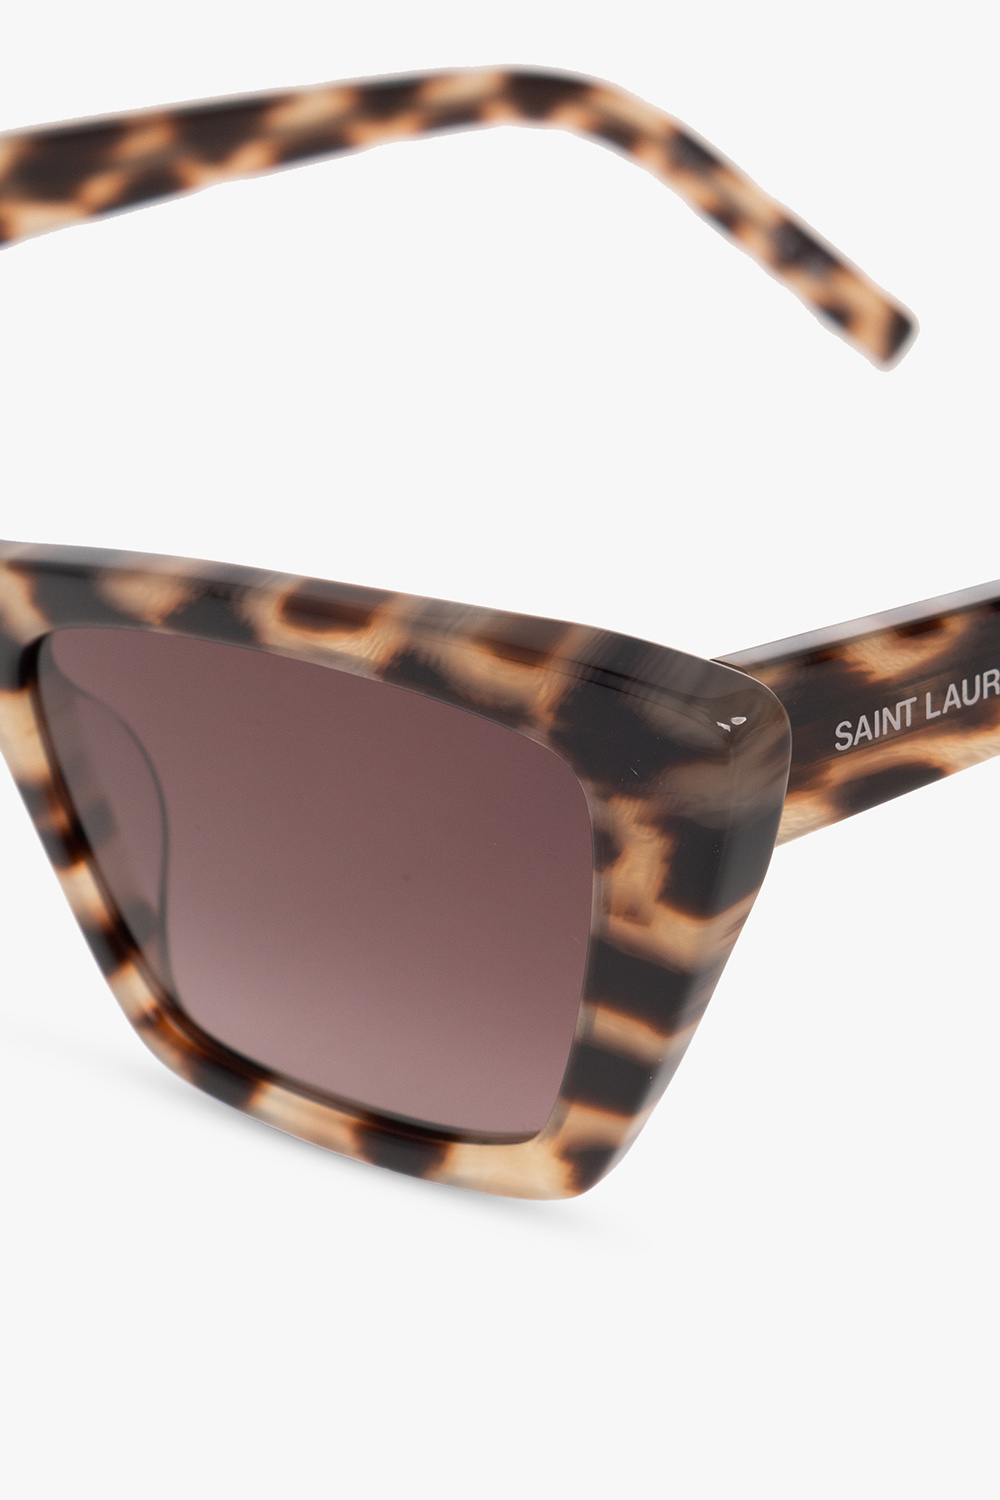 Saint Laurent ‘SL 276 MICA’ medusa sunglasses